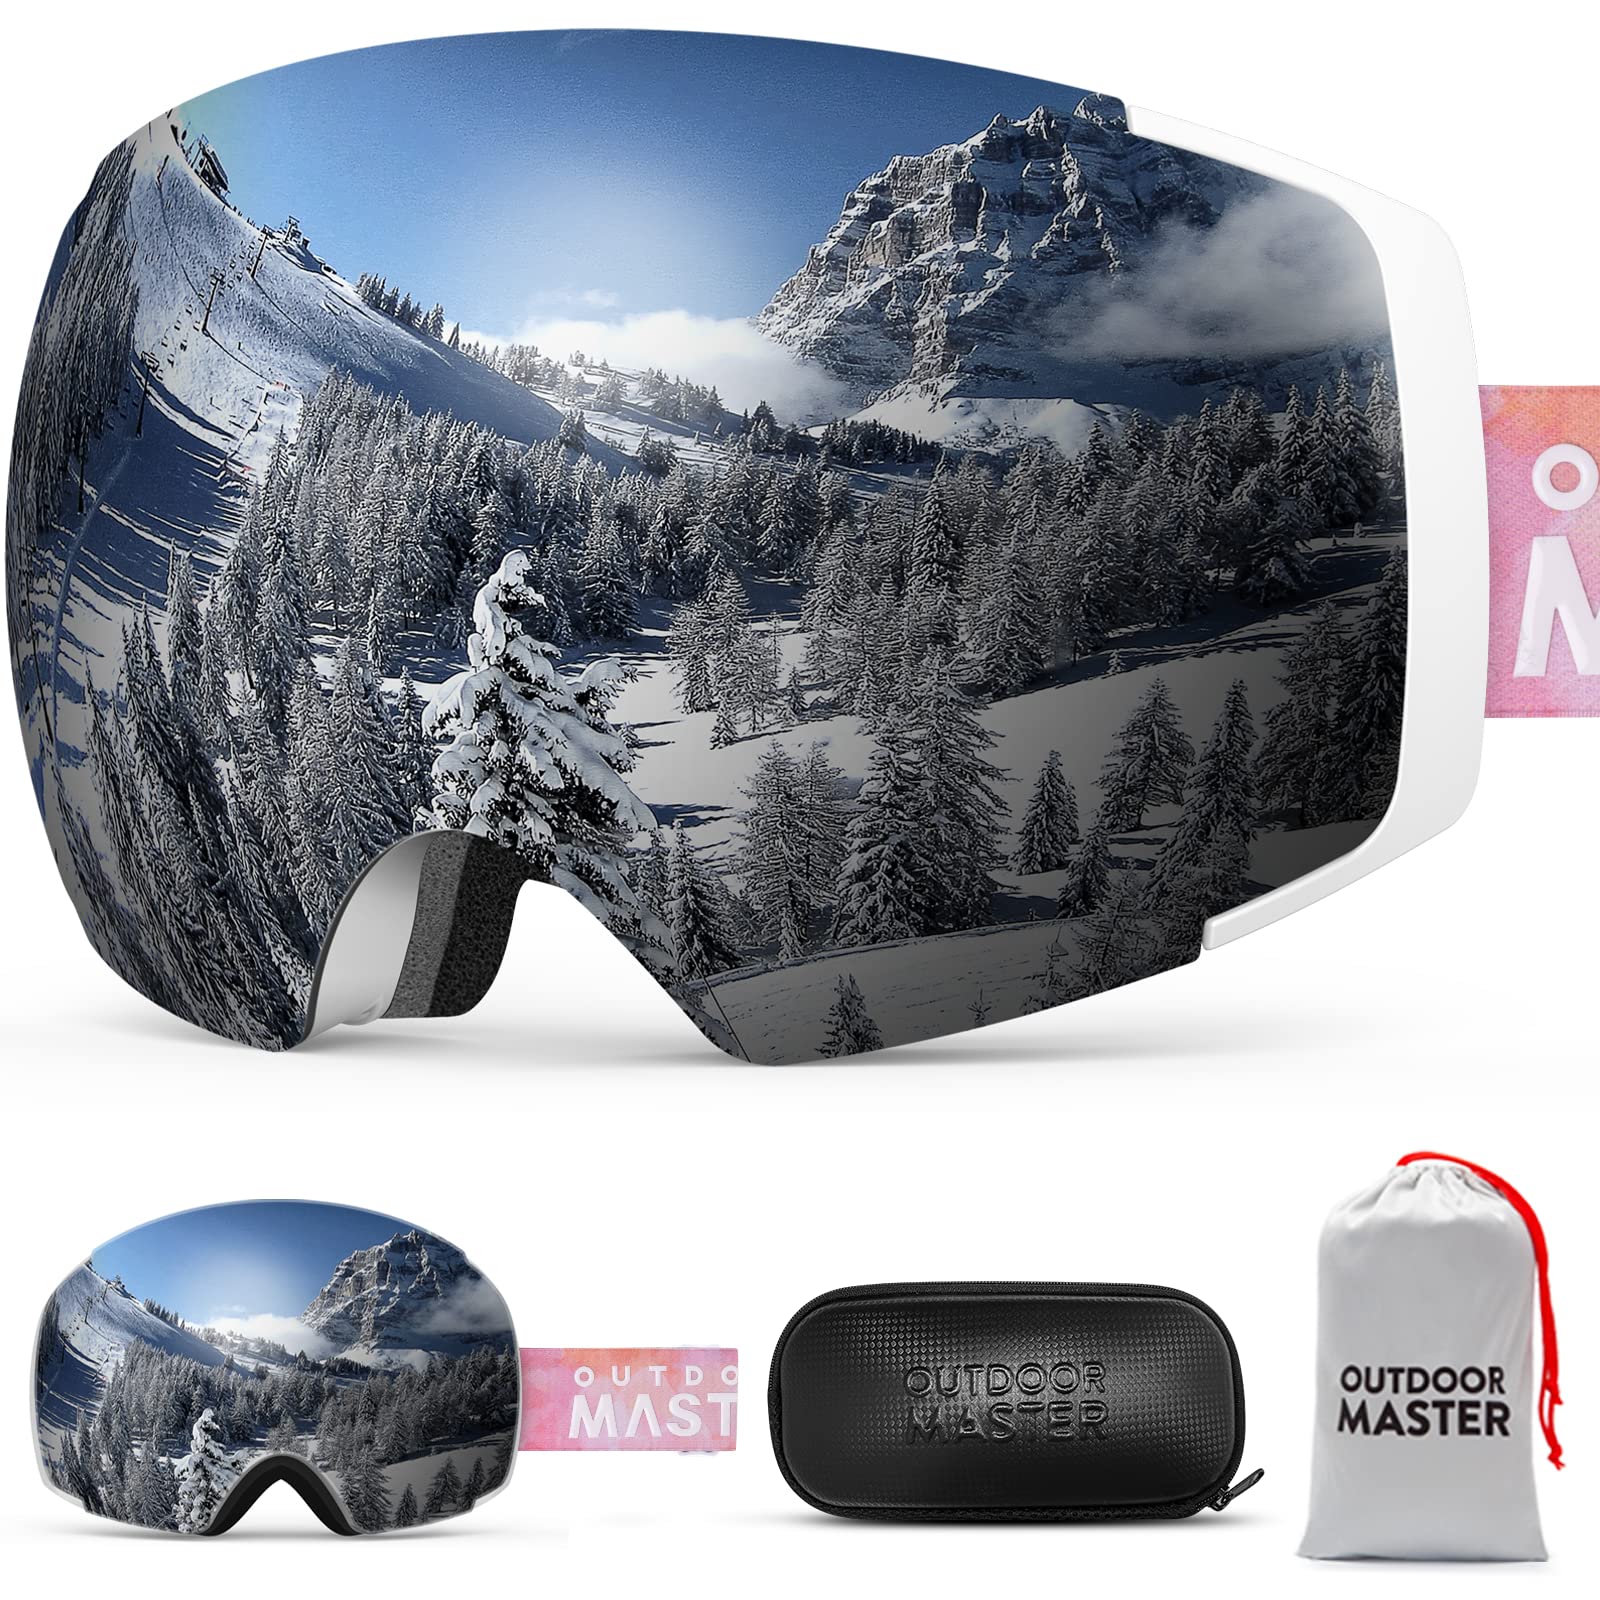 OutdoorMaster スキーゴーグル 両層磁気レンズ レンズ着脱可 UV紫外線カットメガネ対応 ケース付き 曇り止め 180°広視野 スノーゴーグル